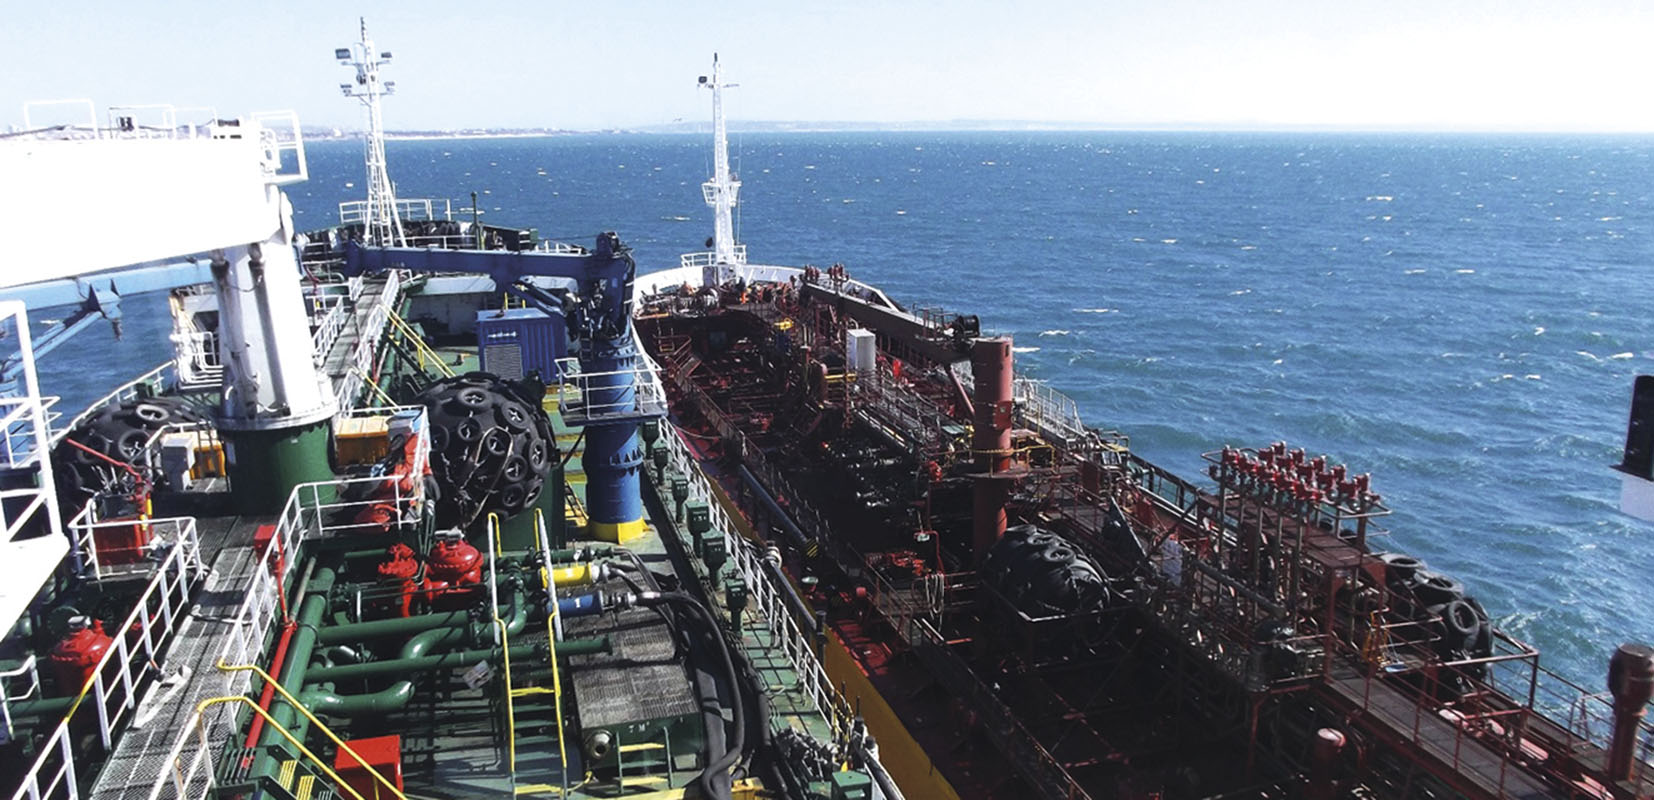 Izquierda petrolero “Bahía Tres”, dando suministro a otro barco (ship to ship)